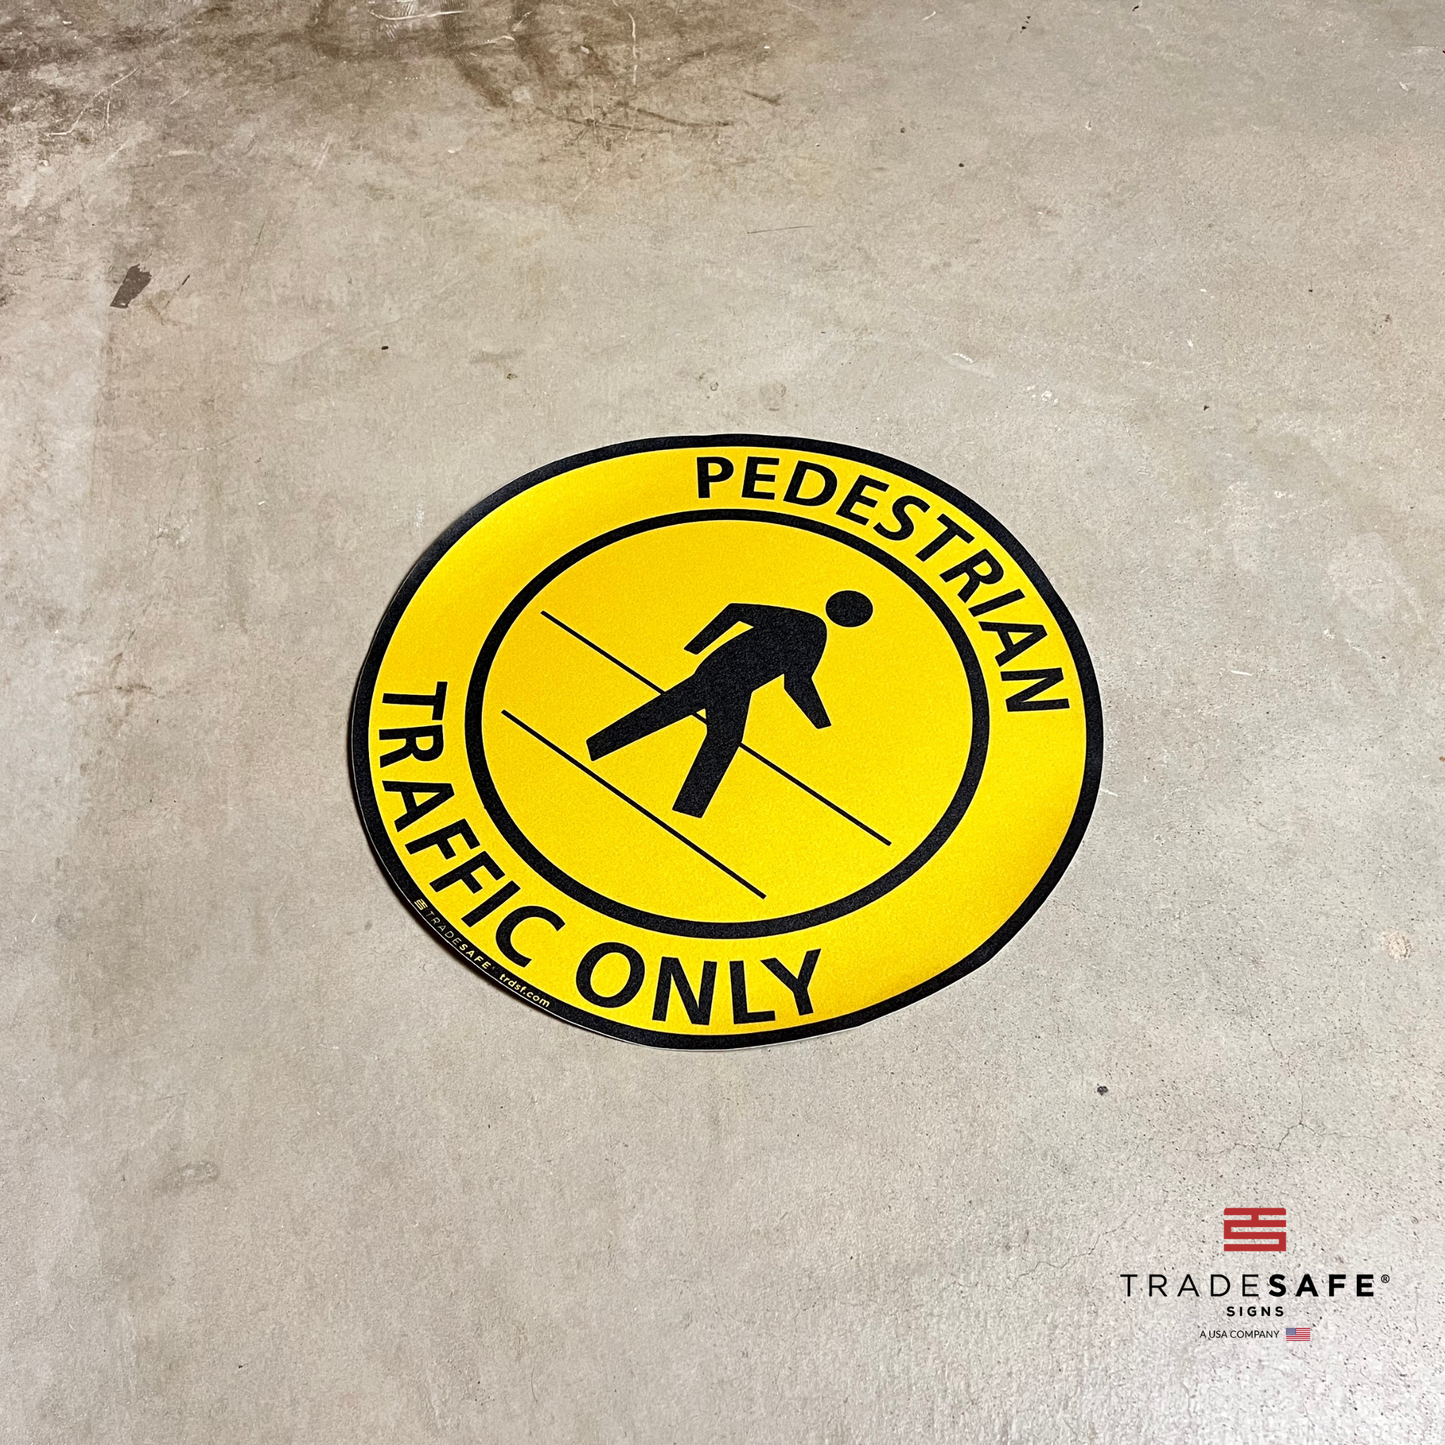 "pedestrian traffic only" sign vinyl sticker on floor